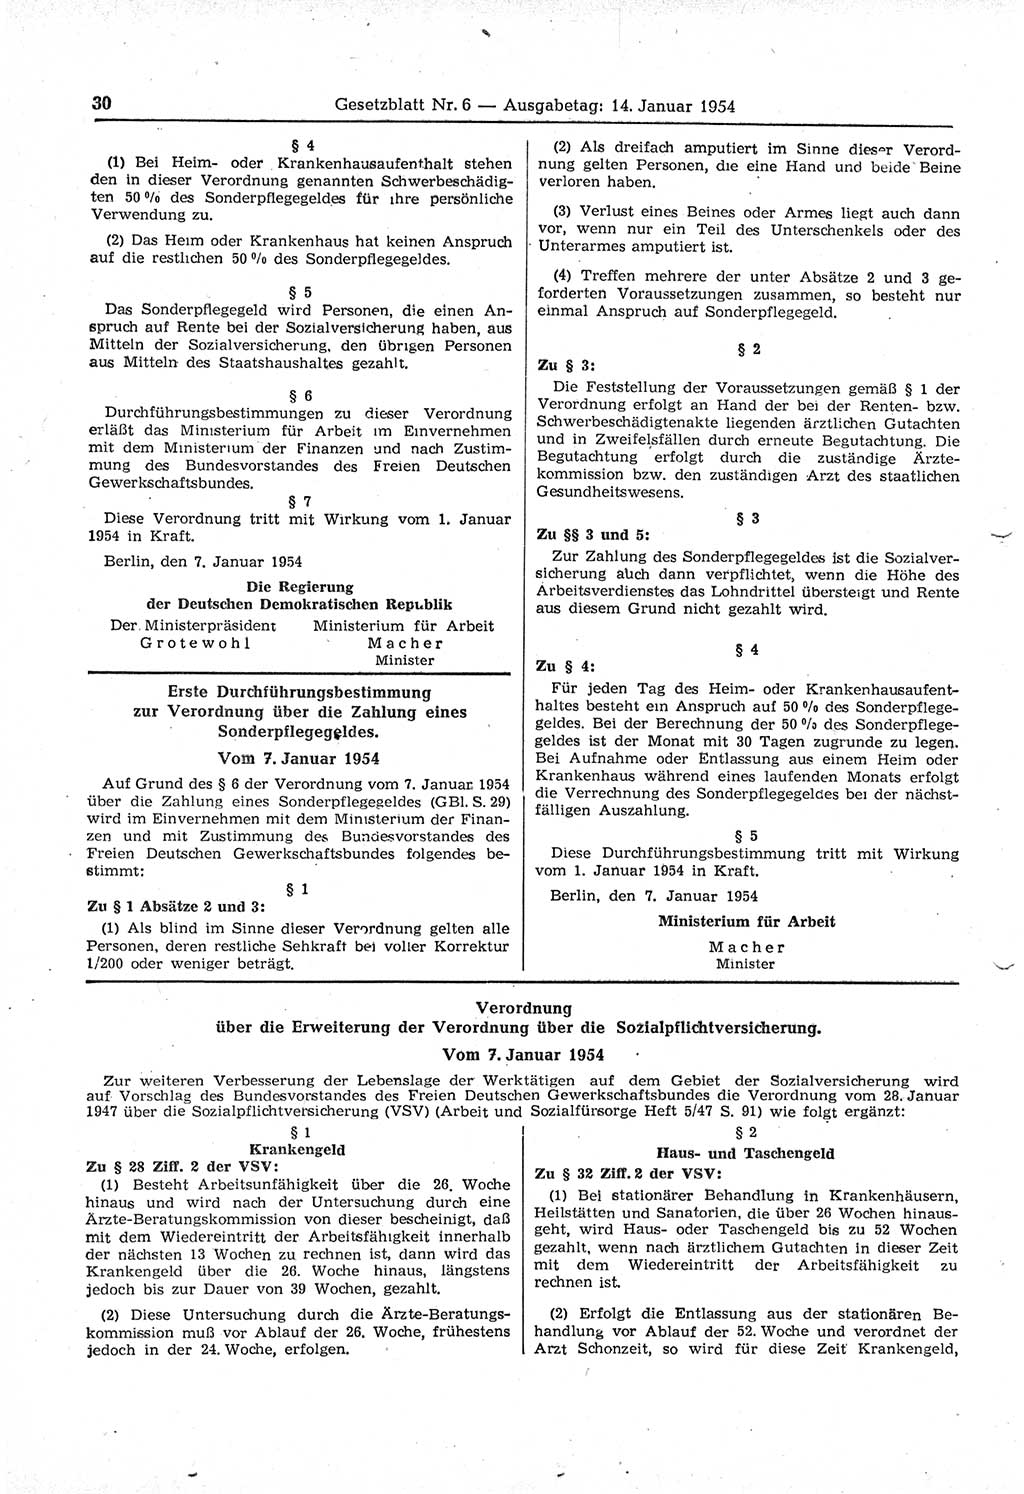 Gesetzblatt (GBl.) der Deutschen Demokratischen Republik (DDR) 1954, Seite 30 (GBl. DDR 1954, S. 30)